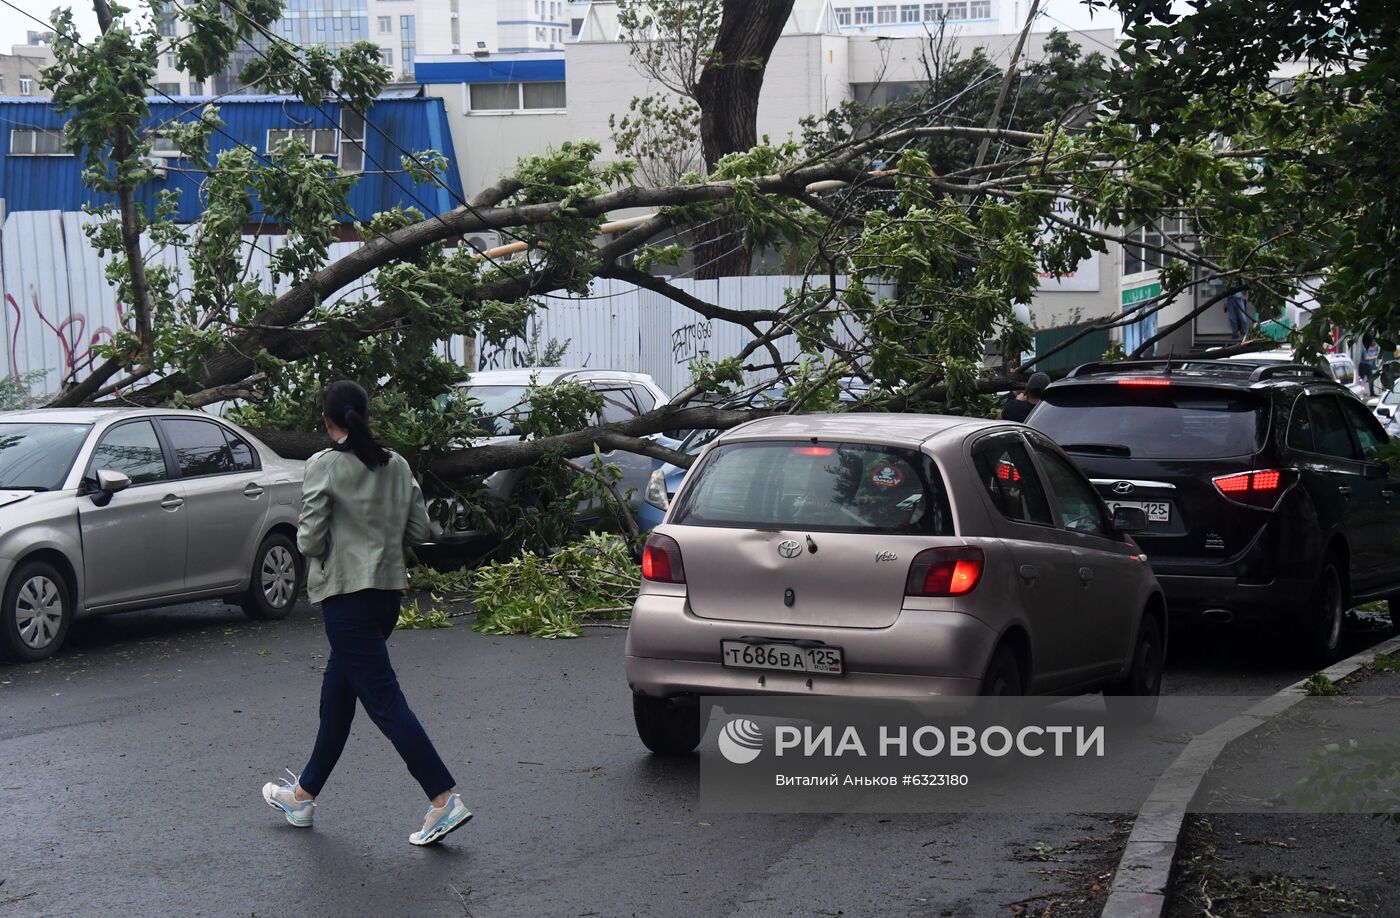 Последствия урагана во Владивостоке